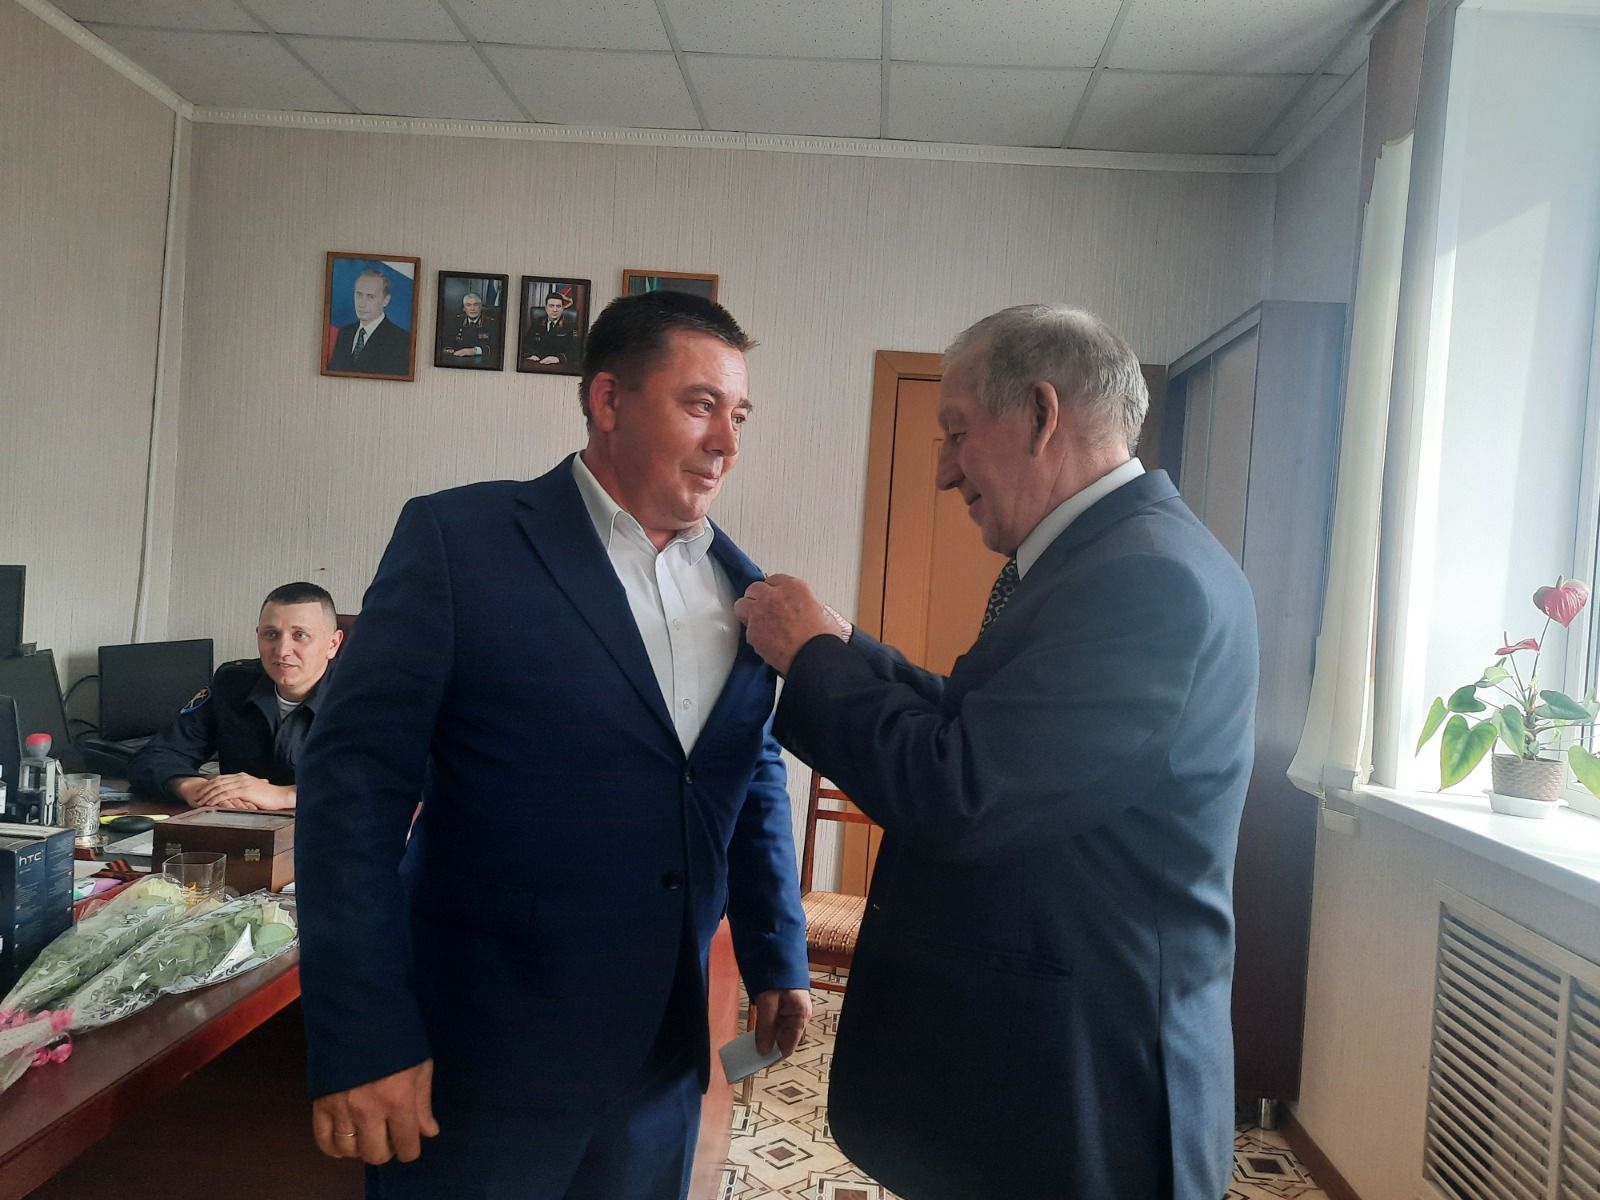 В Дрожжановском районе РТ поздравили ветеранов МВД